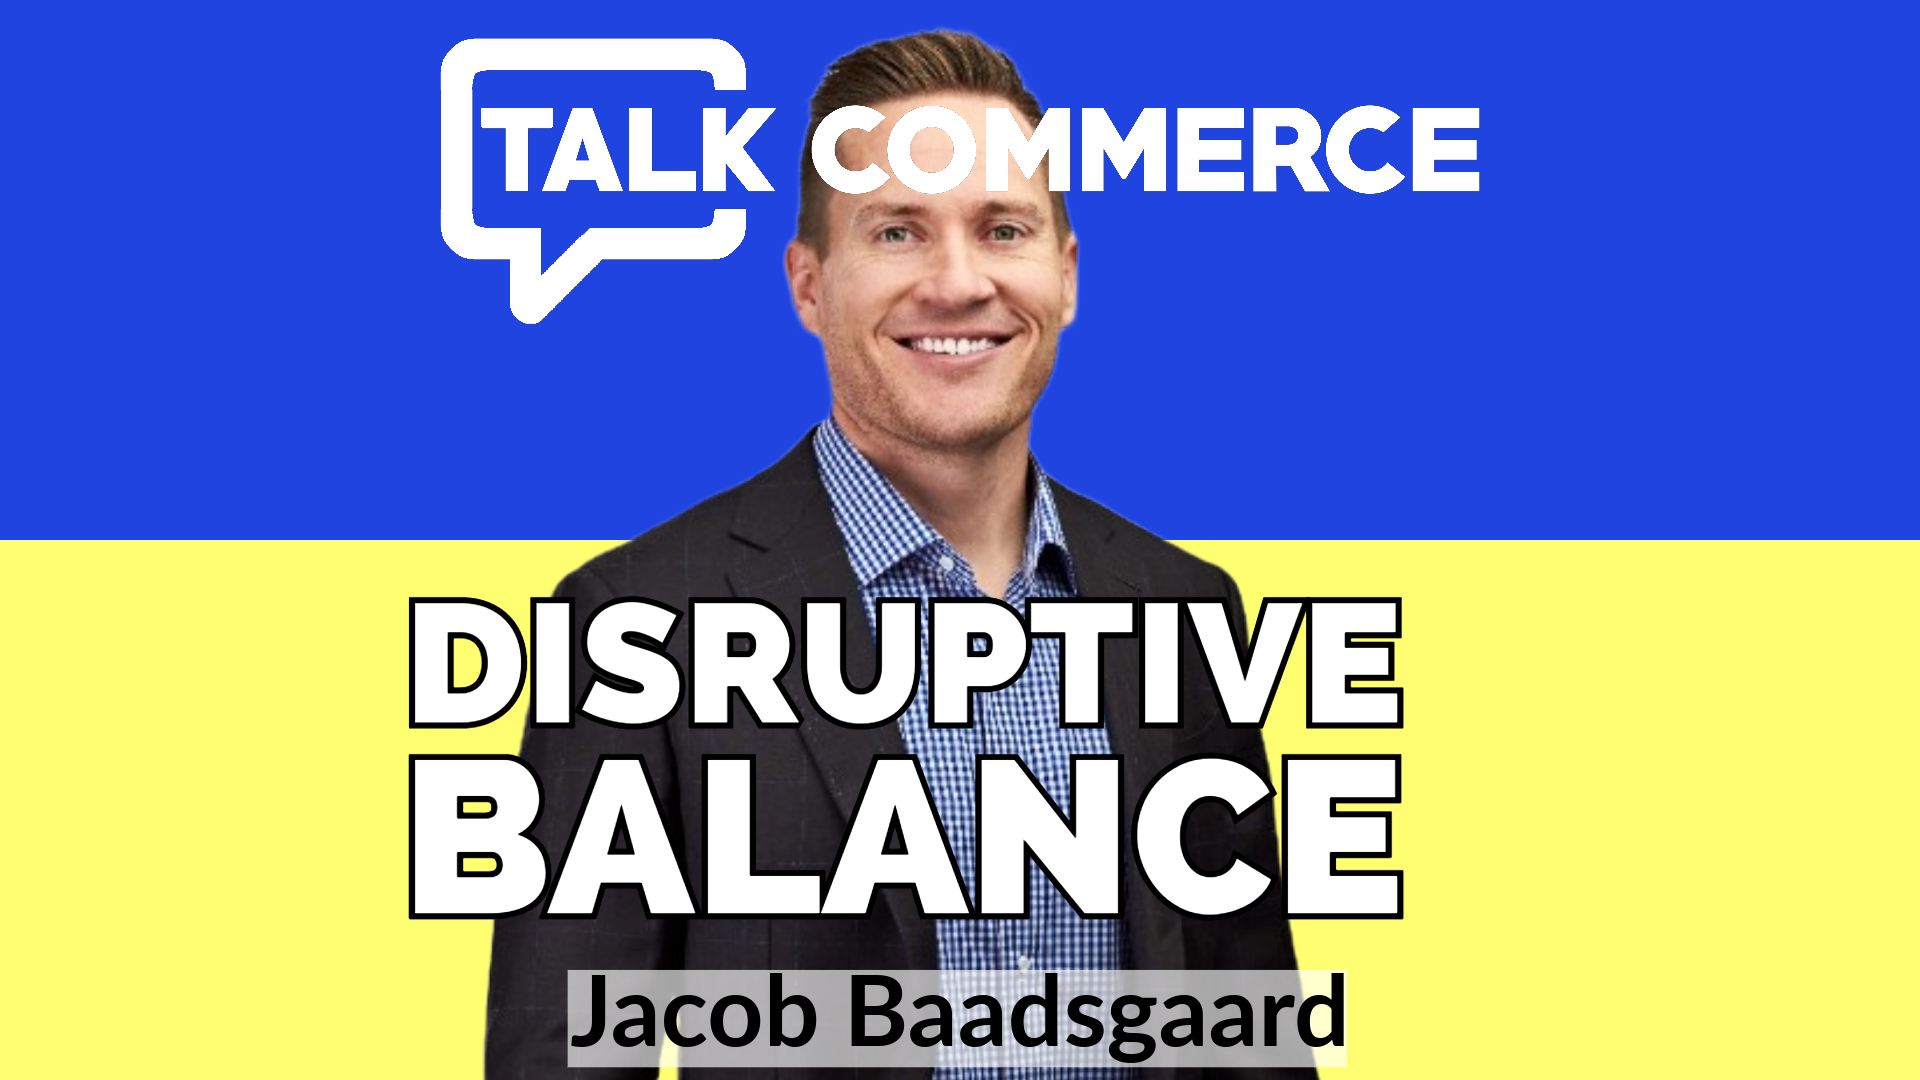 Talk-Commerce Jacob Baadsgaard